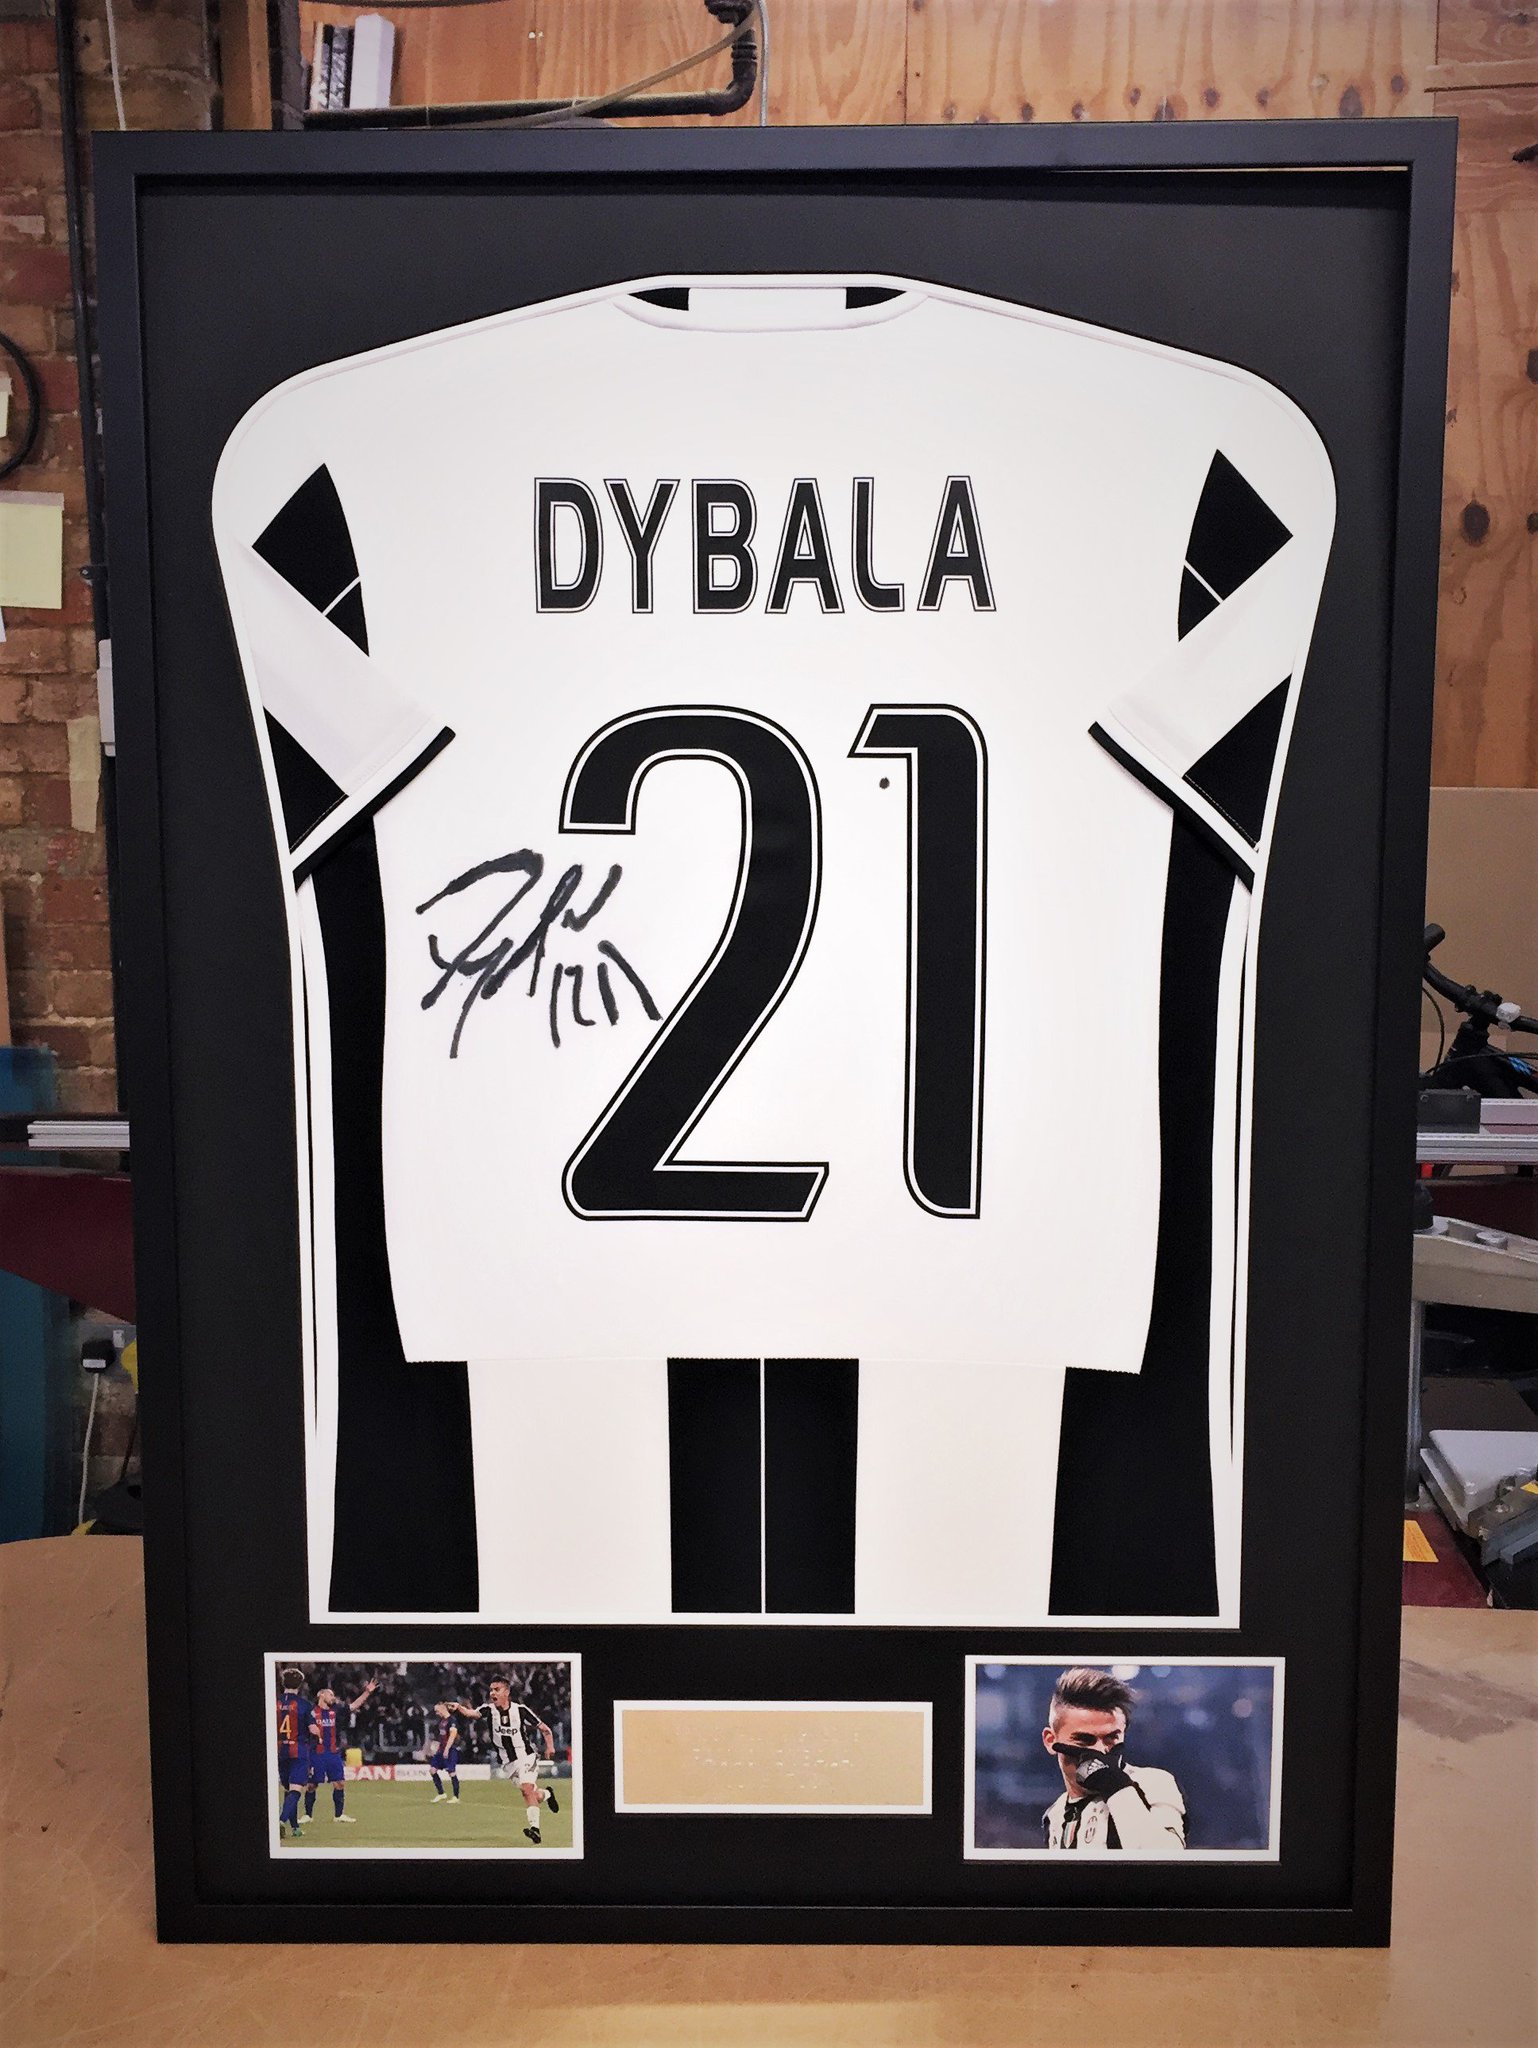 dybala signed jersey